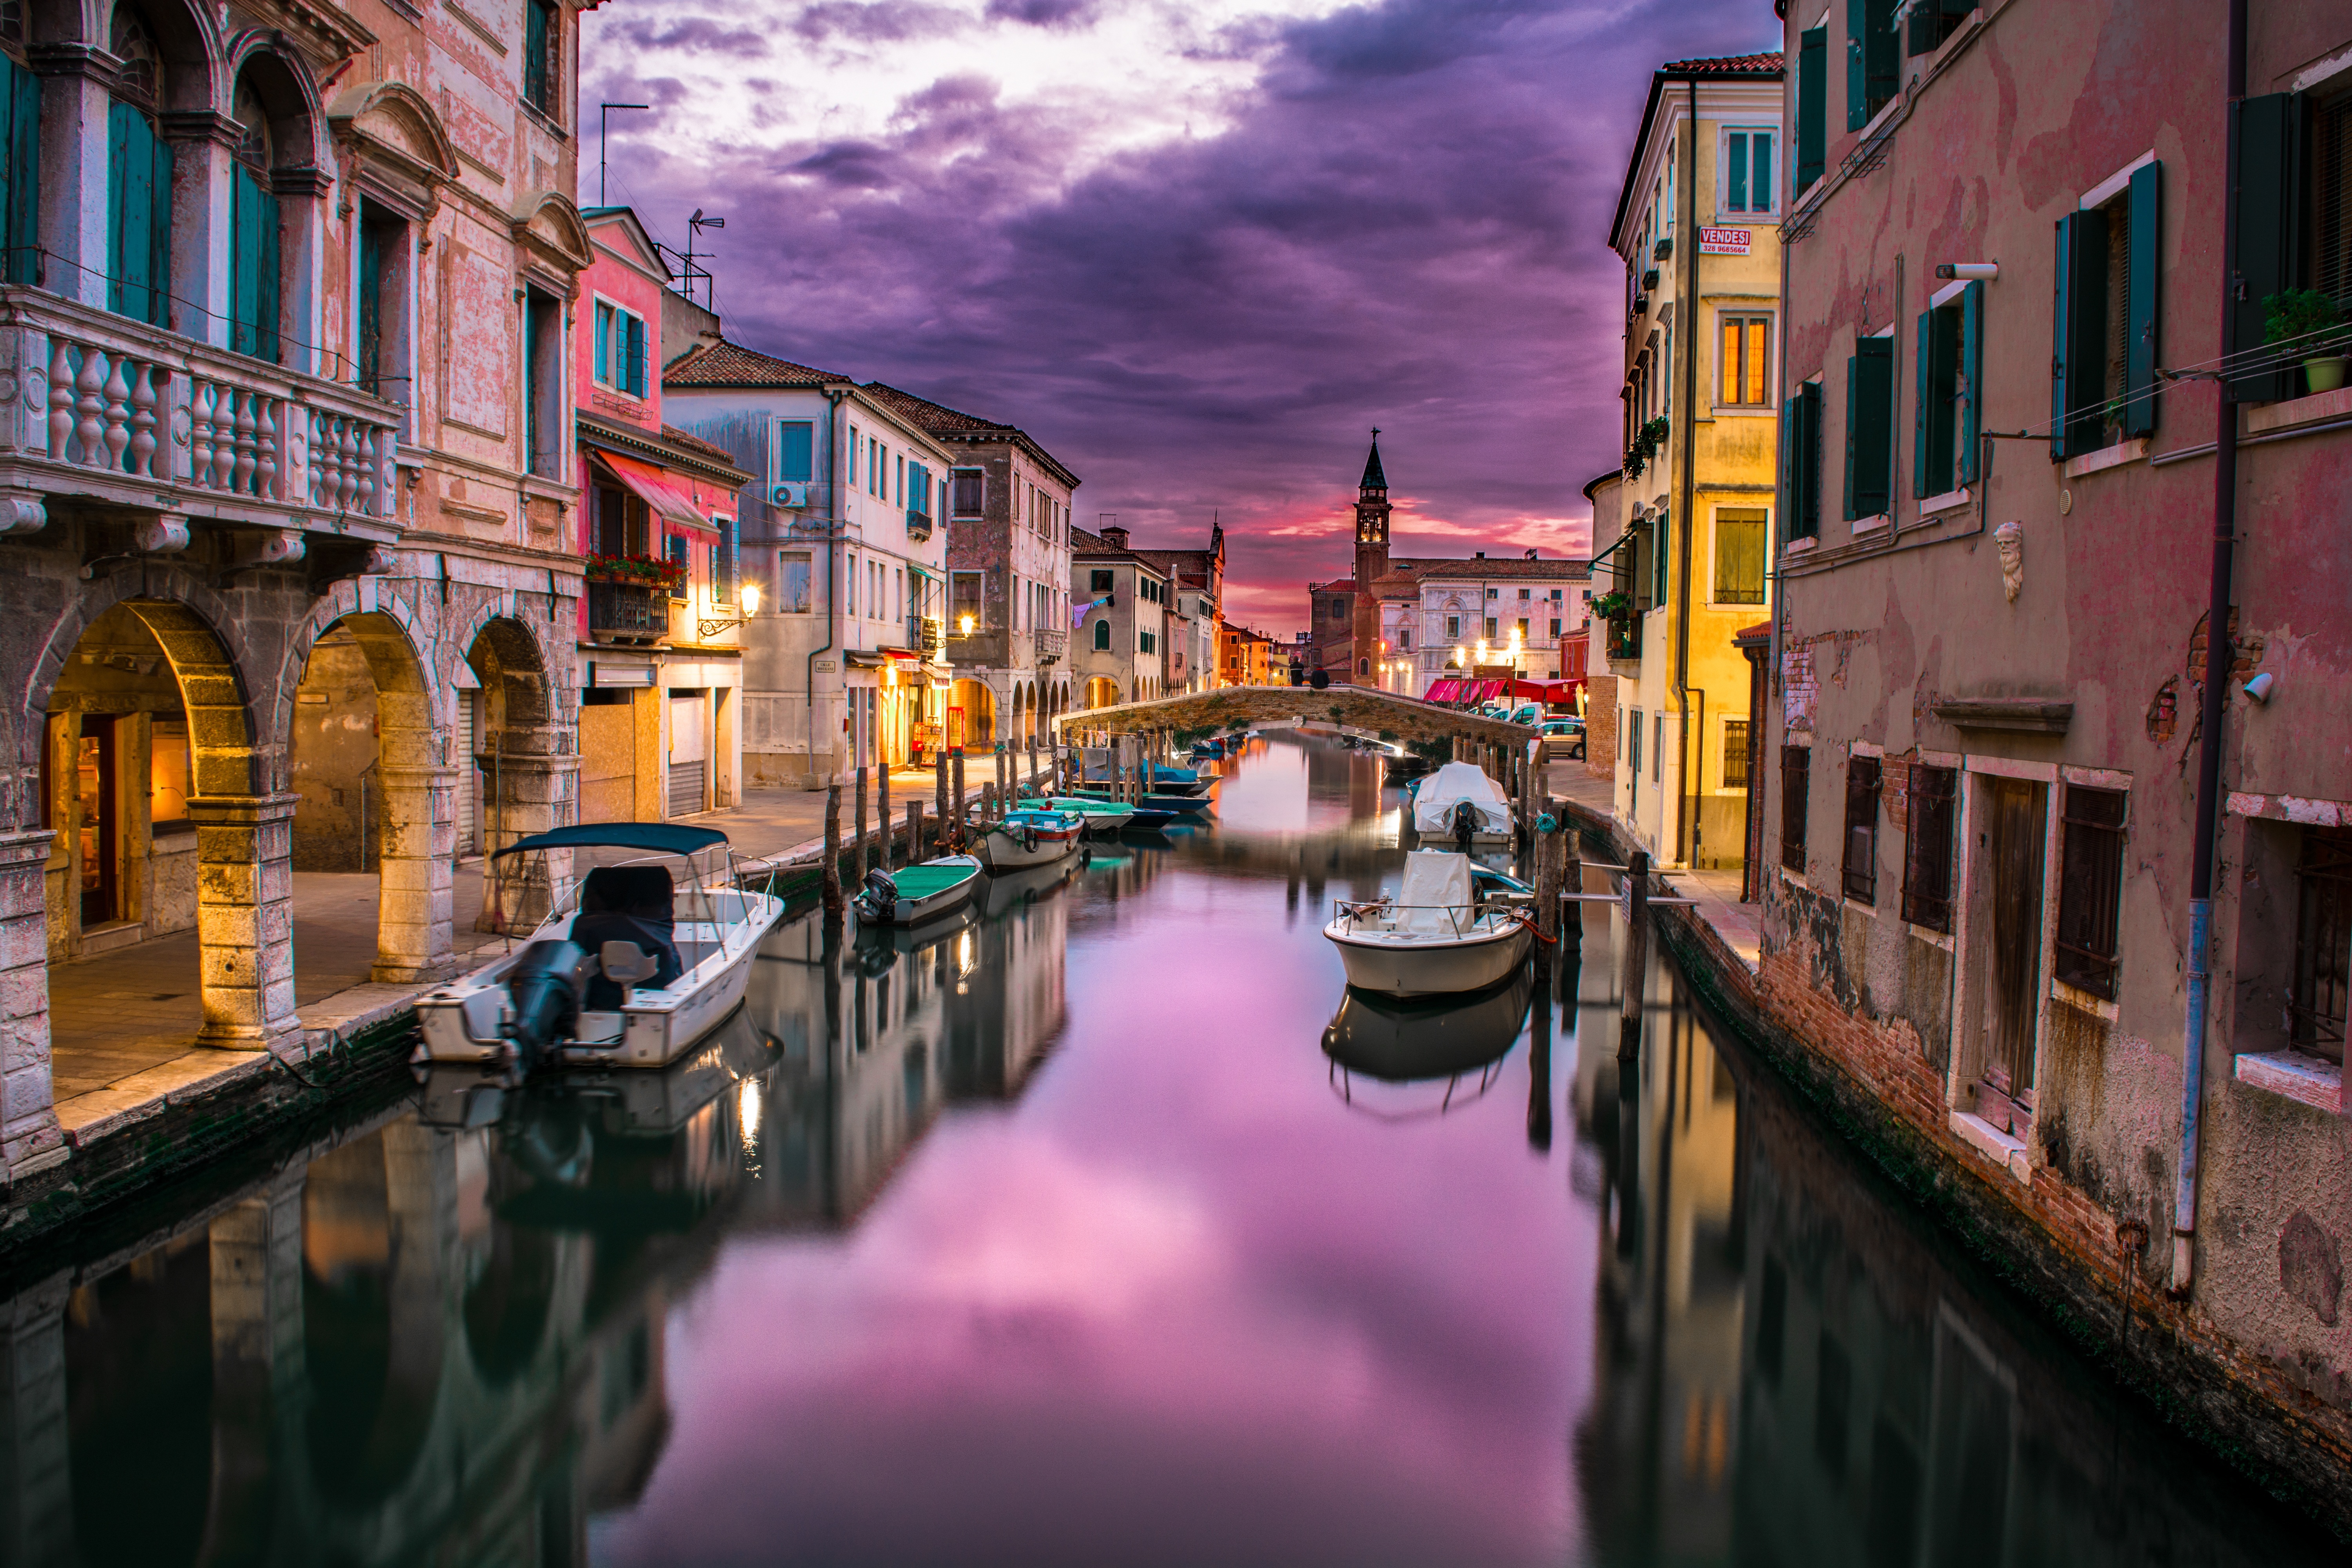 Touristen müssen voraussichtlich erst ab September Eintrittsgebühren für Venedig zahlen. Geplant war ursprünglich, Besucher bereits ab 1. Mai zur Kasse zu bitten.